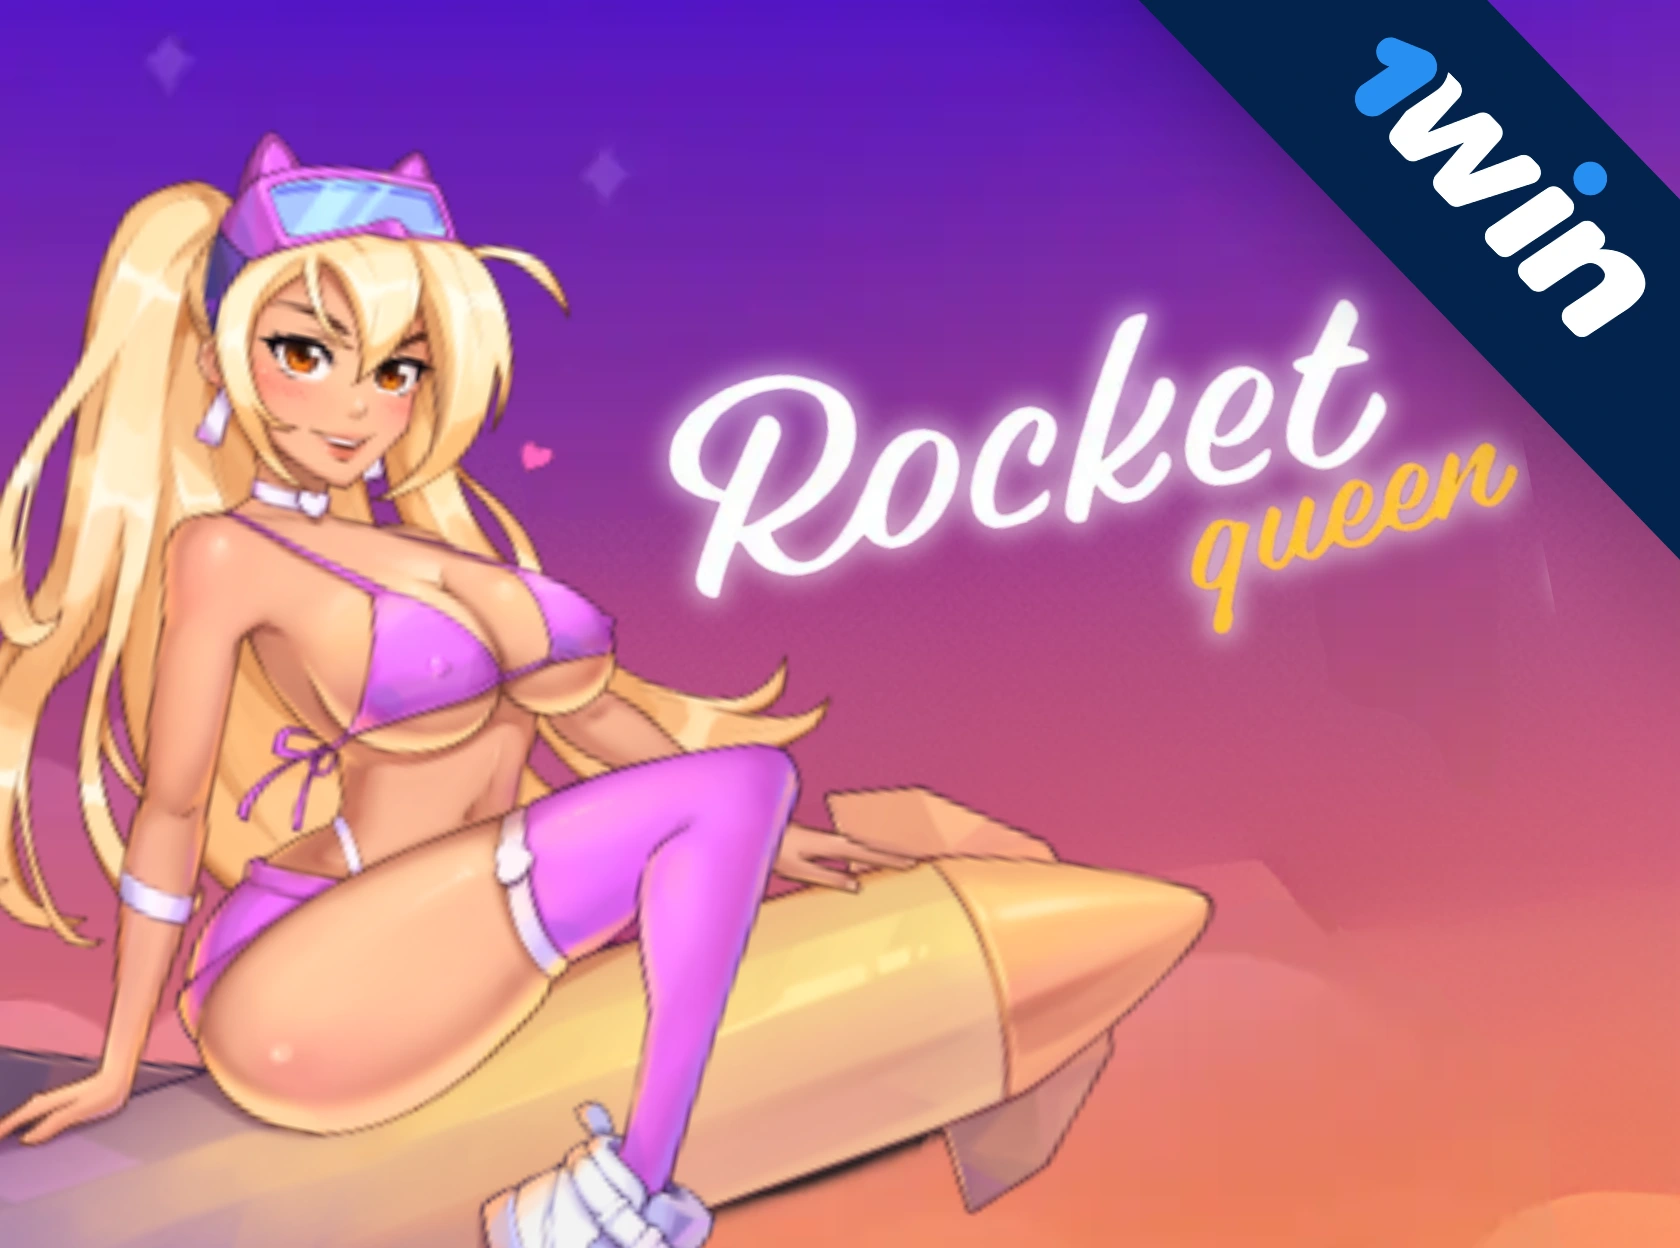 Rocket Queen - 1win-in partlayıcı zərbəsi!